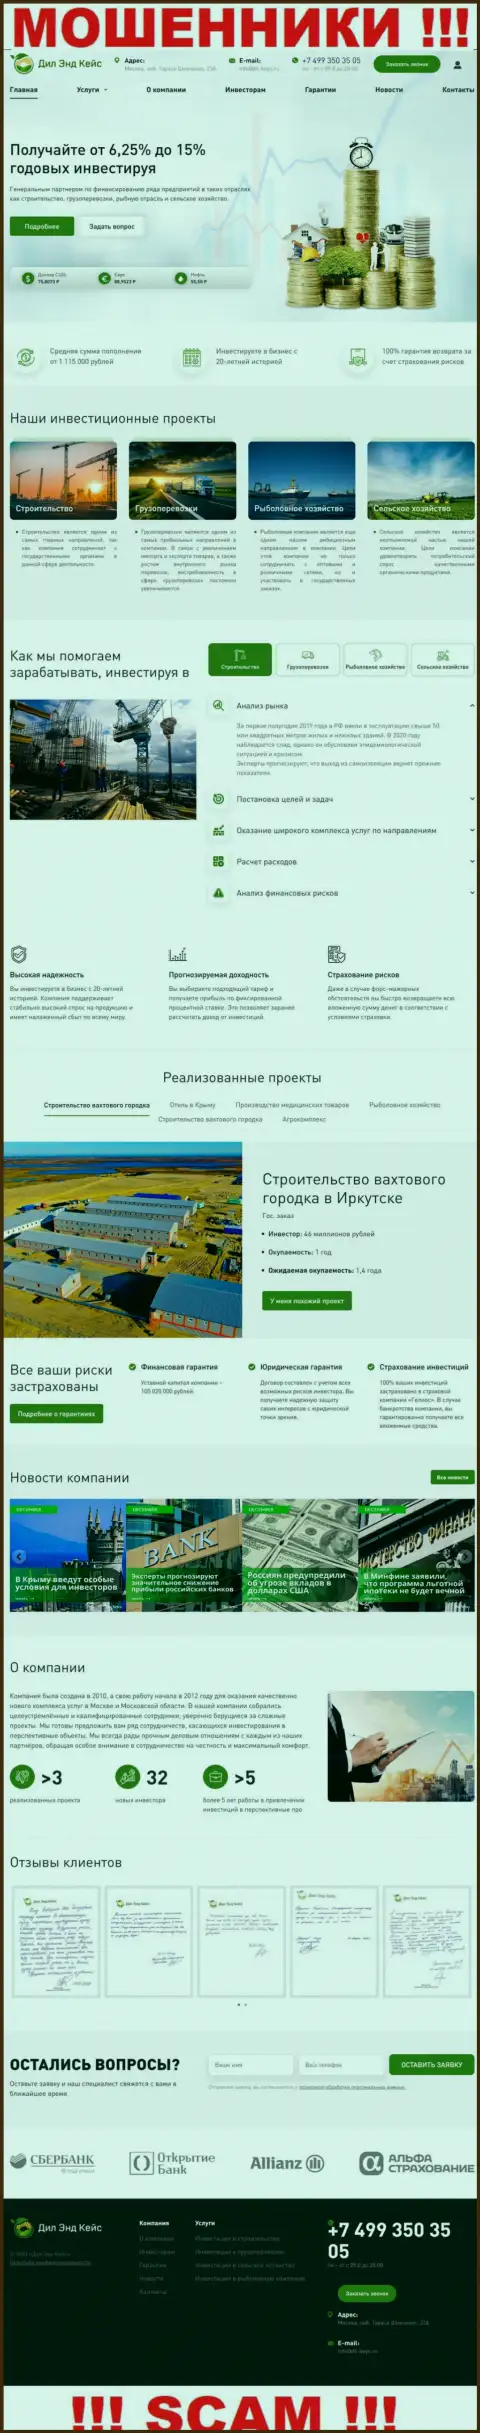 Web-сервис компании Dil-Keys Ru, переполненный неправдивой информацией